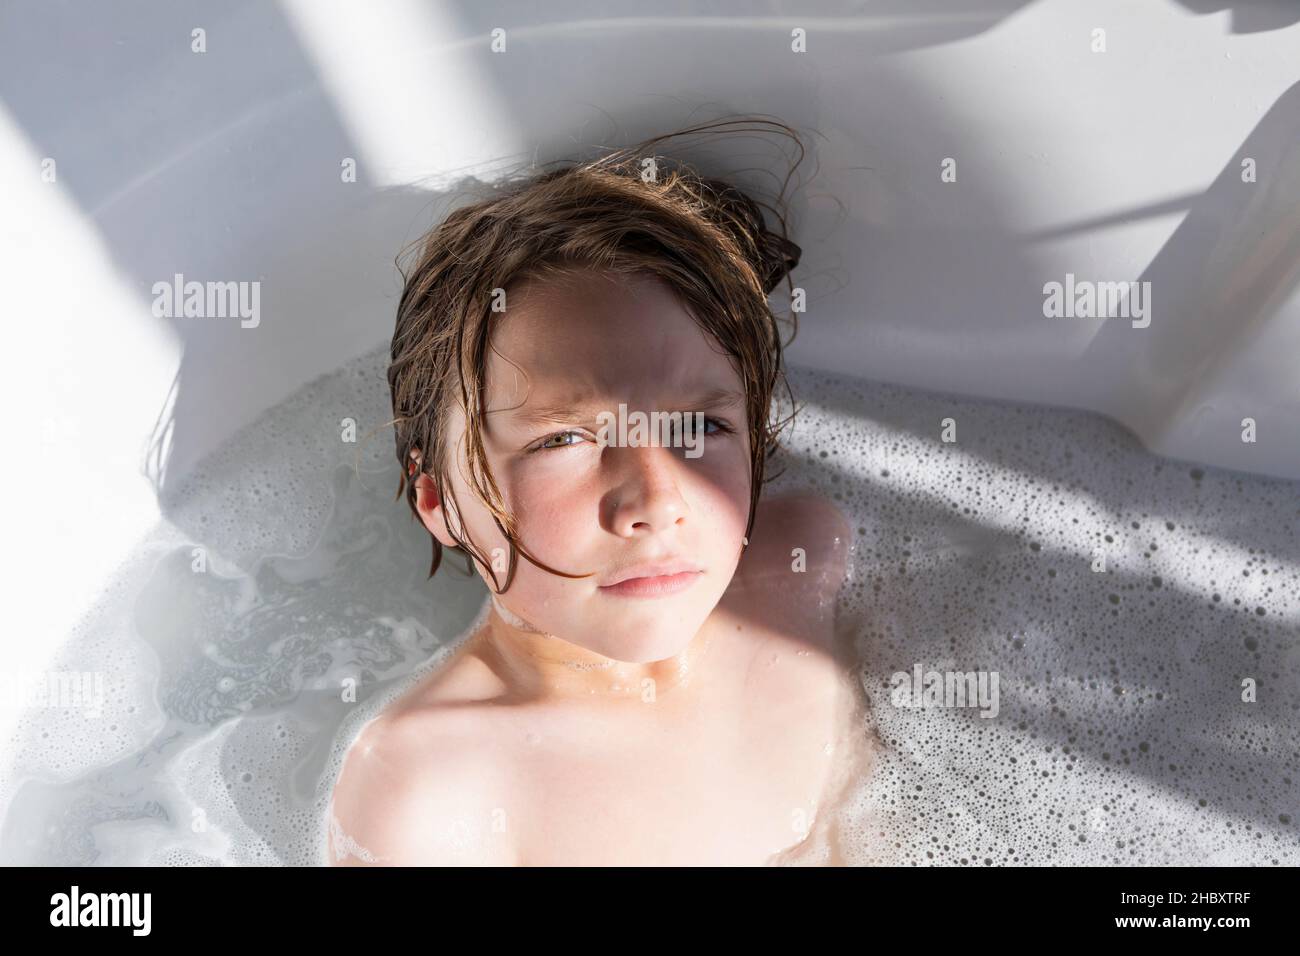 Eight year old boy in a bathtub, having a bath Stock Photo